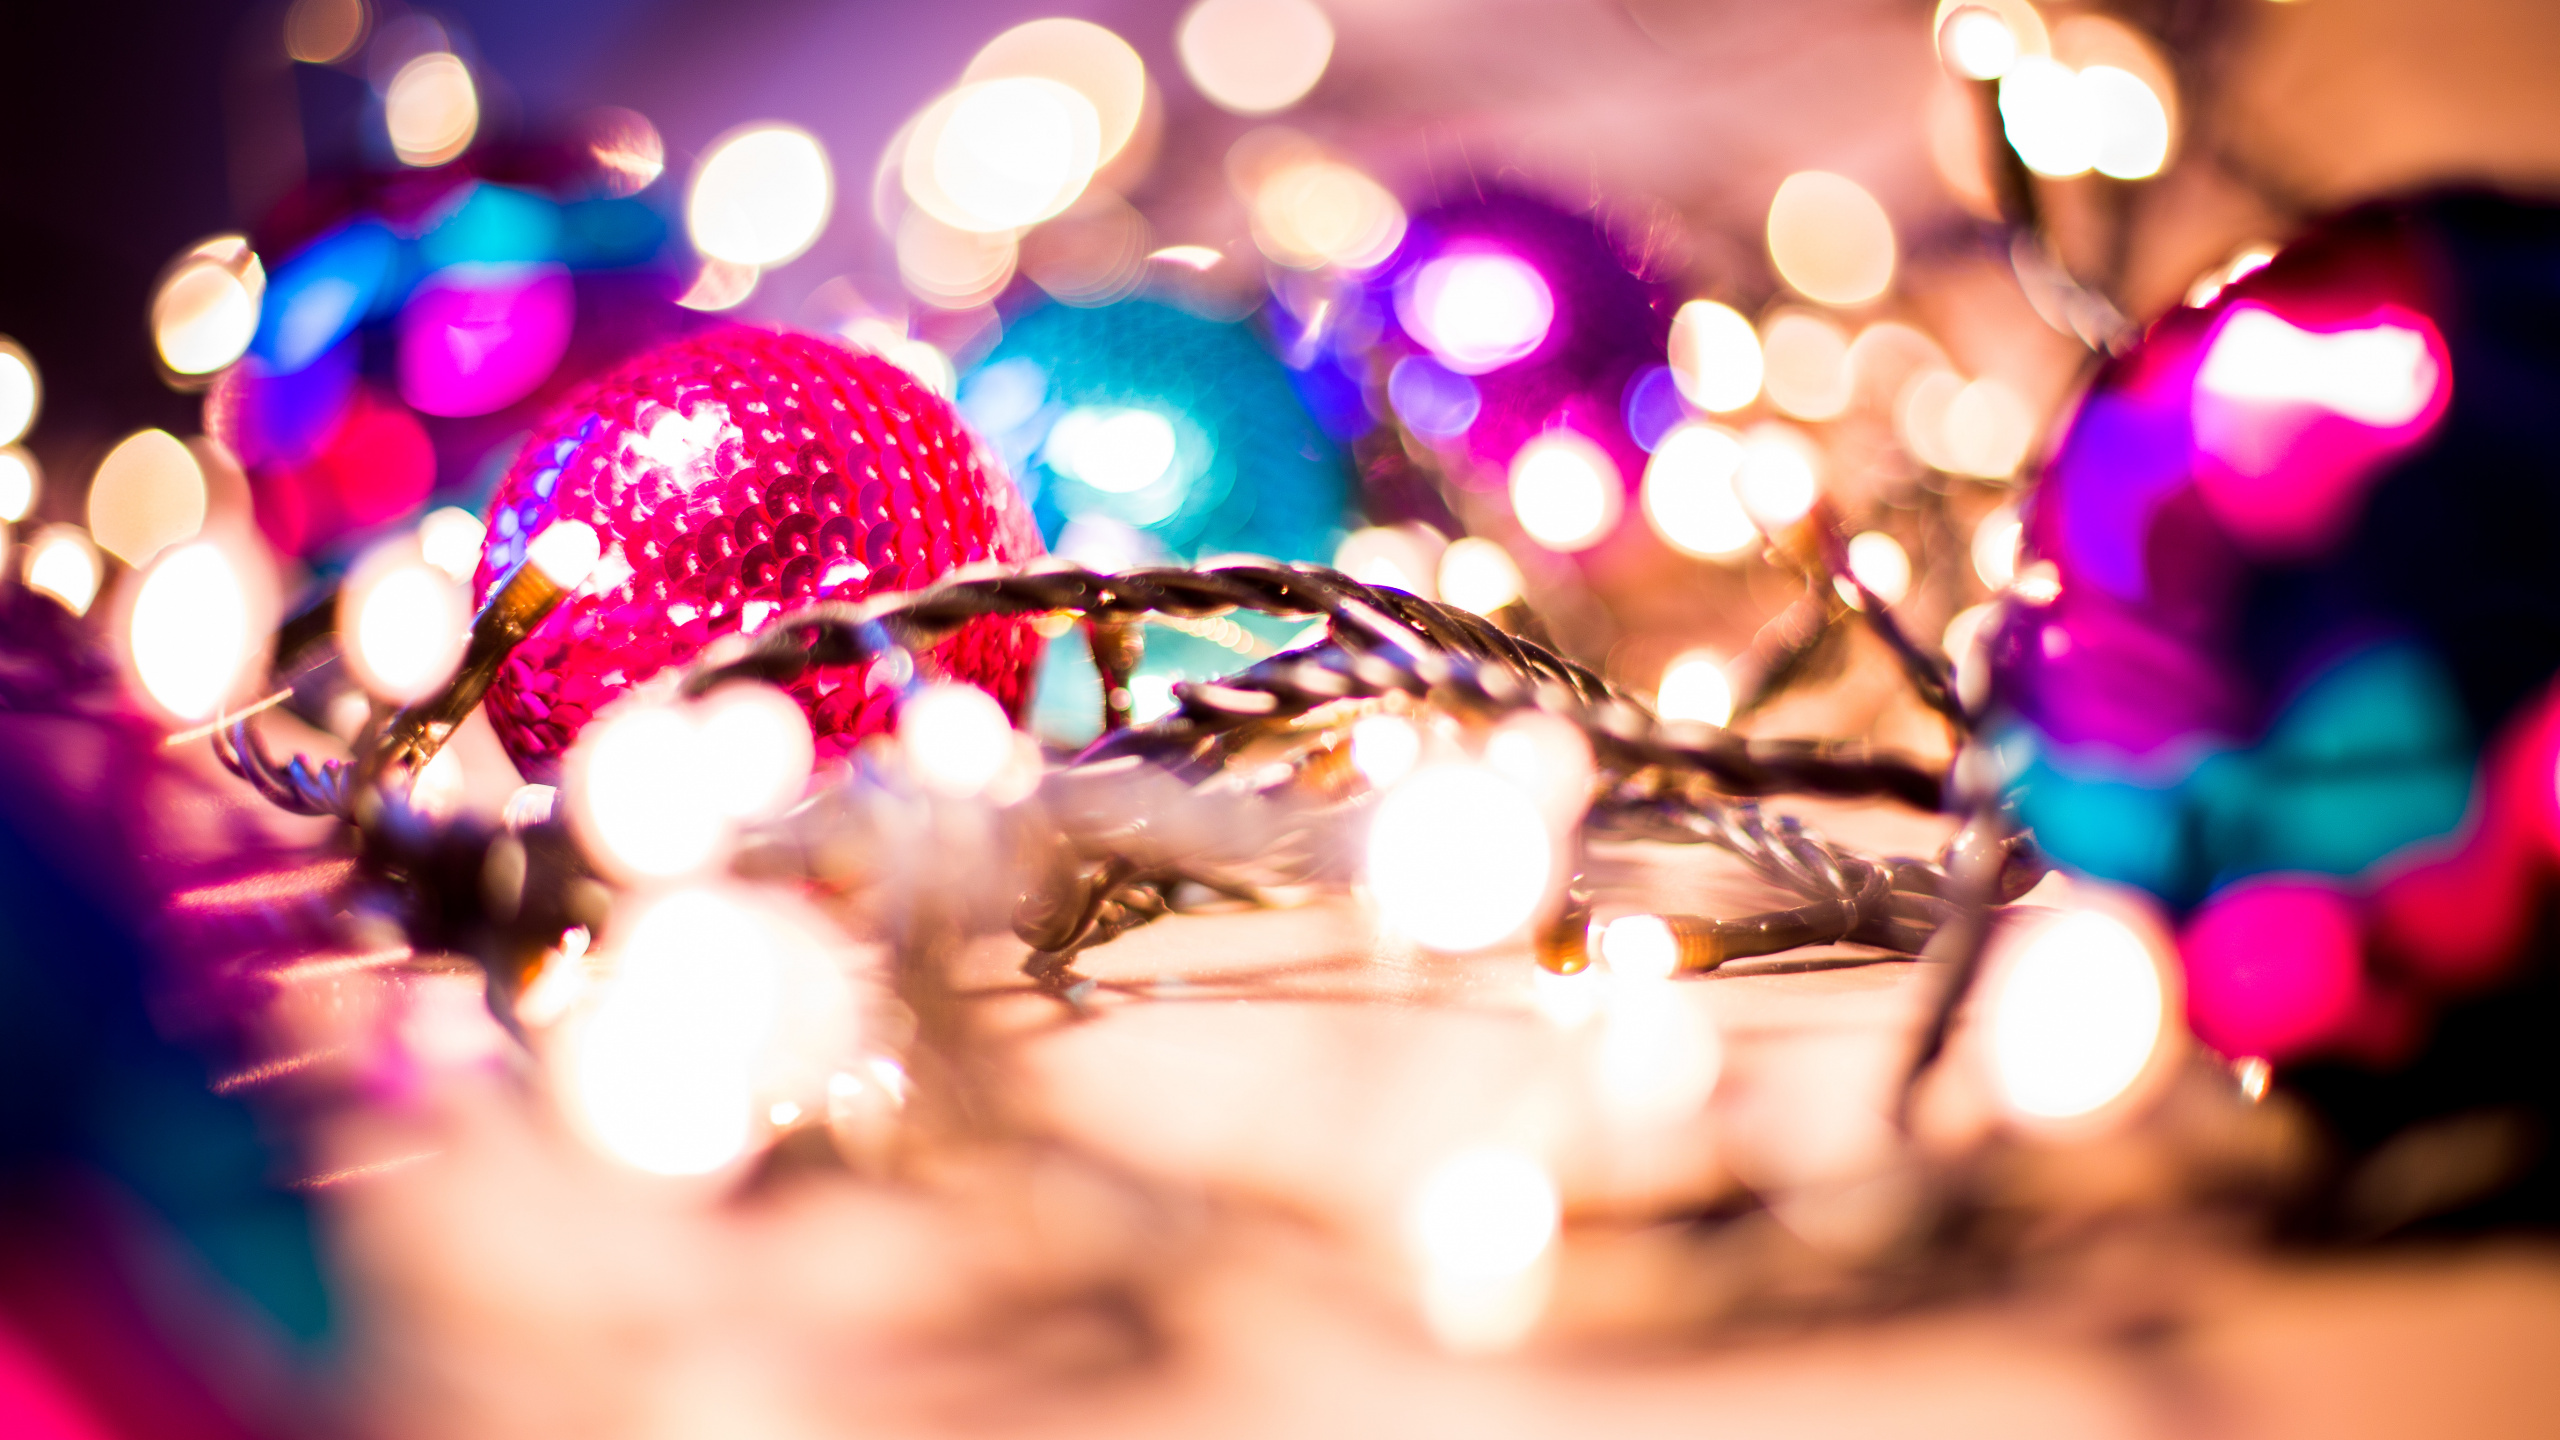 Weihnachten, Weihnachts-und Ferienzeit, Weihnachtsbeleuchtung, Pink, Licht. Wallpaper in 2560x1440 Resolution